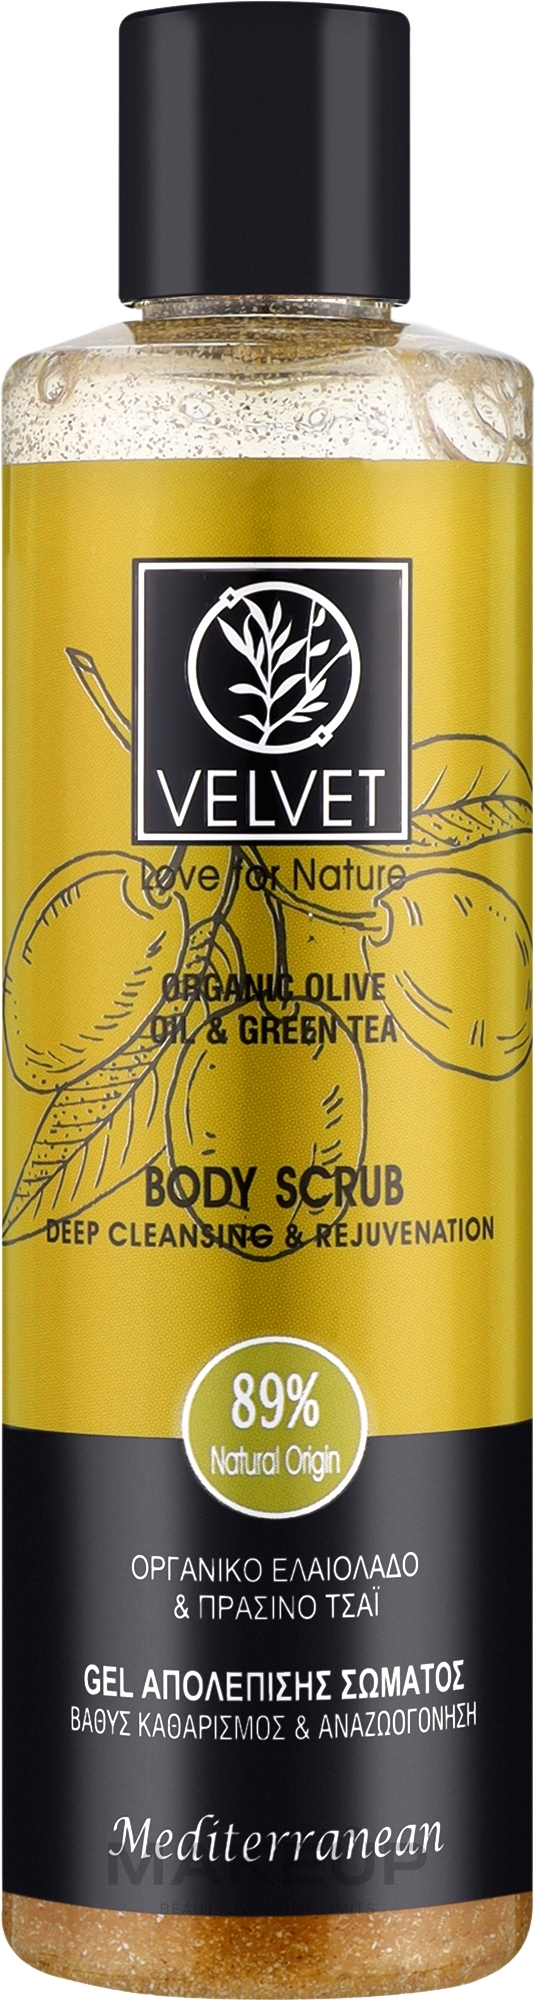 Скраб для тіла - Velvet Love for Nature Organic Olive & Green Tea Body Scrub — фото 250ml